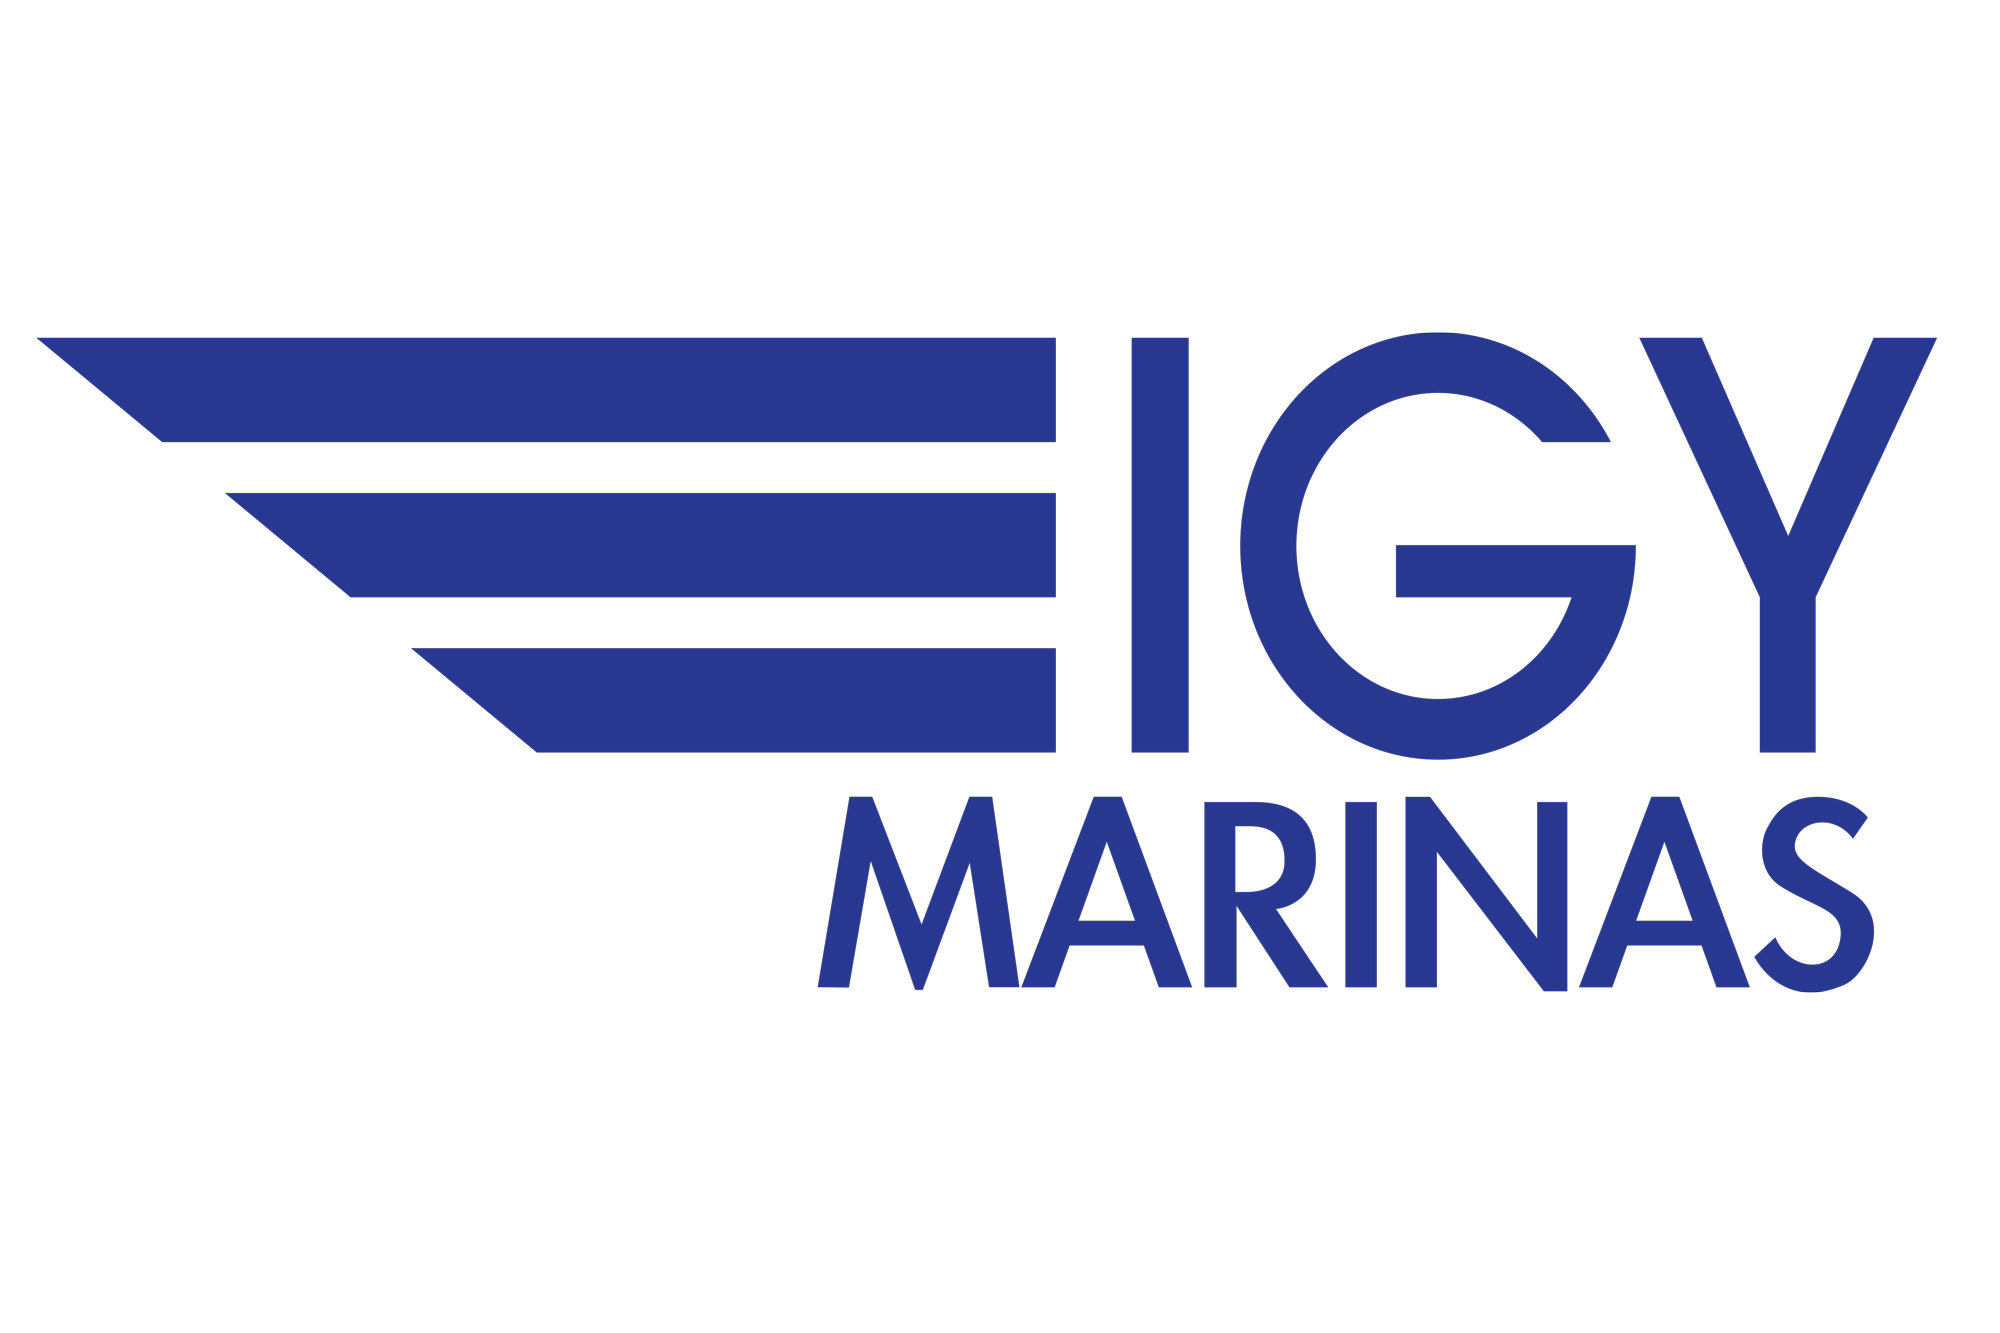 IGY Marinas logo